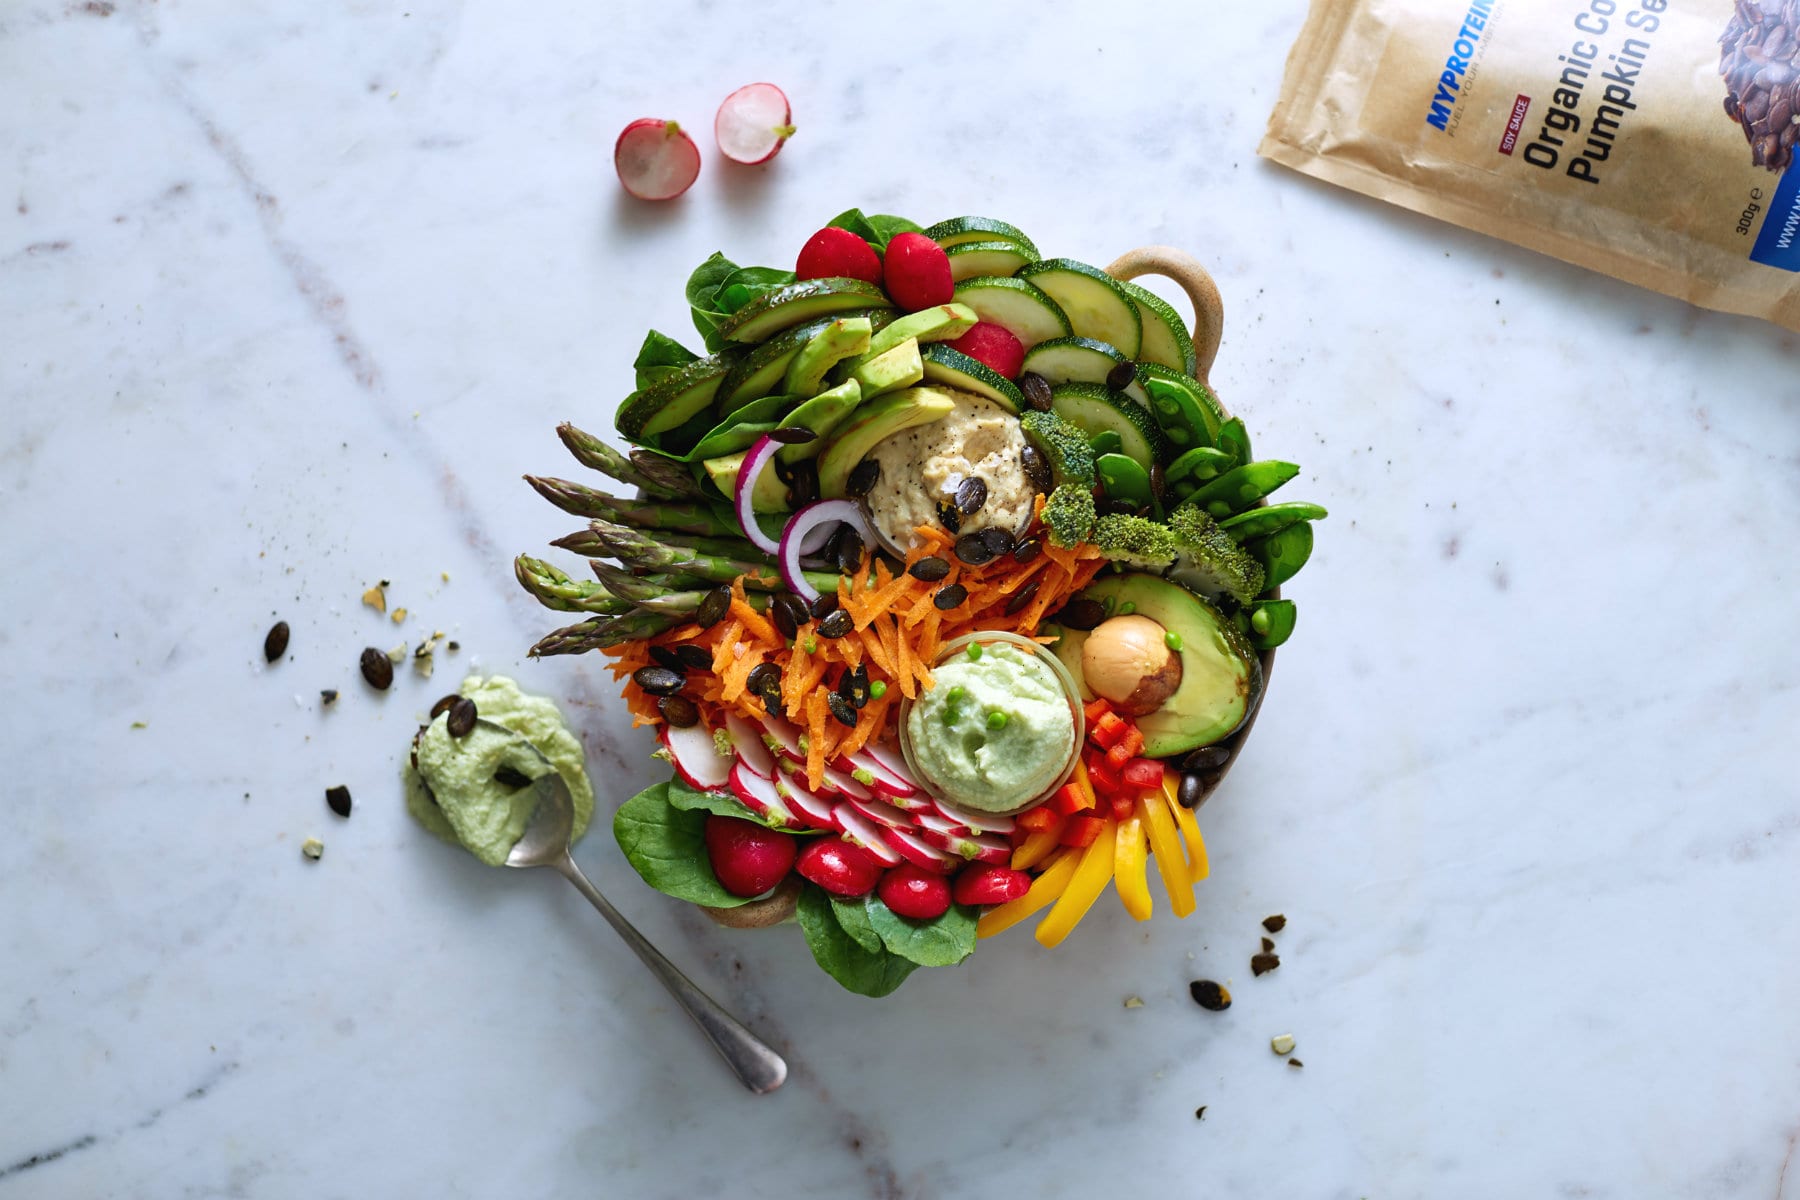 Rainbow Vegan Bowl & Guacamole | Vegan Bowl Recipe